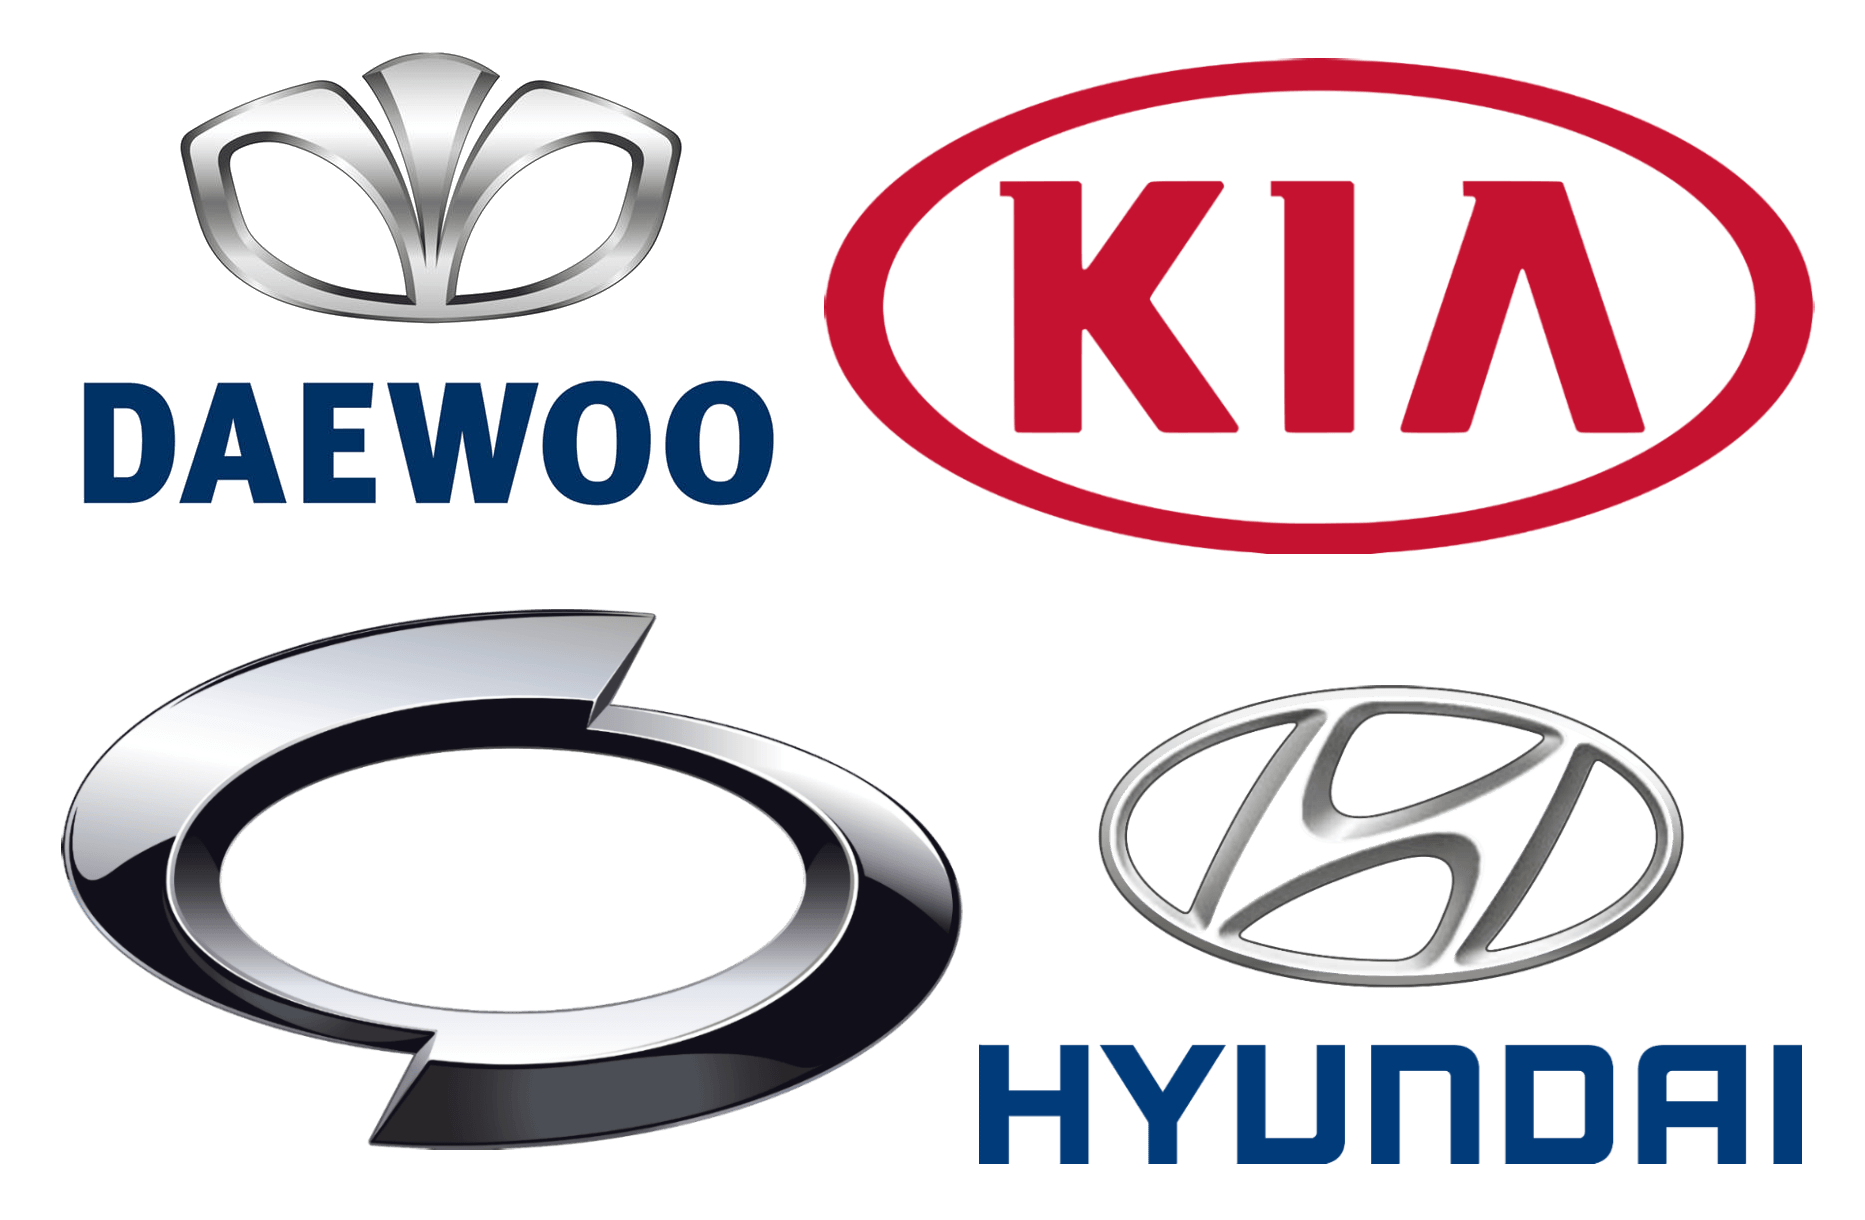 Asian Company Logo - Korean Car Brands, Companies and Manufacturers | Car Brand Names.com